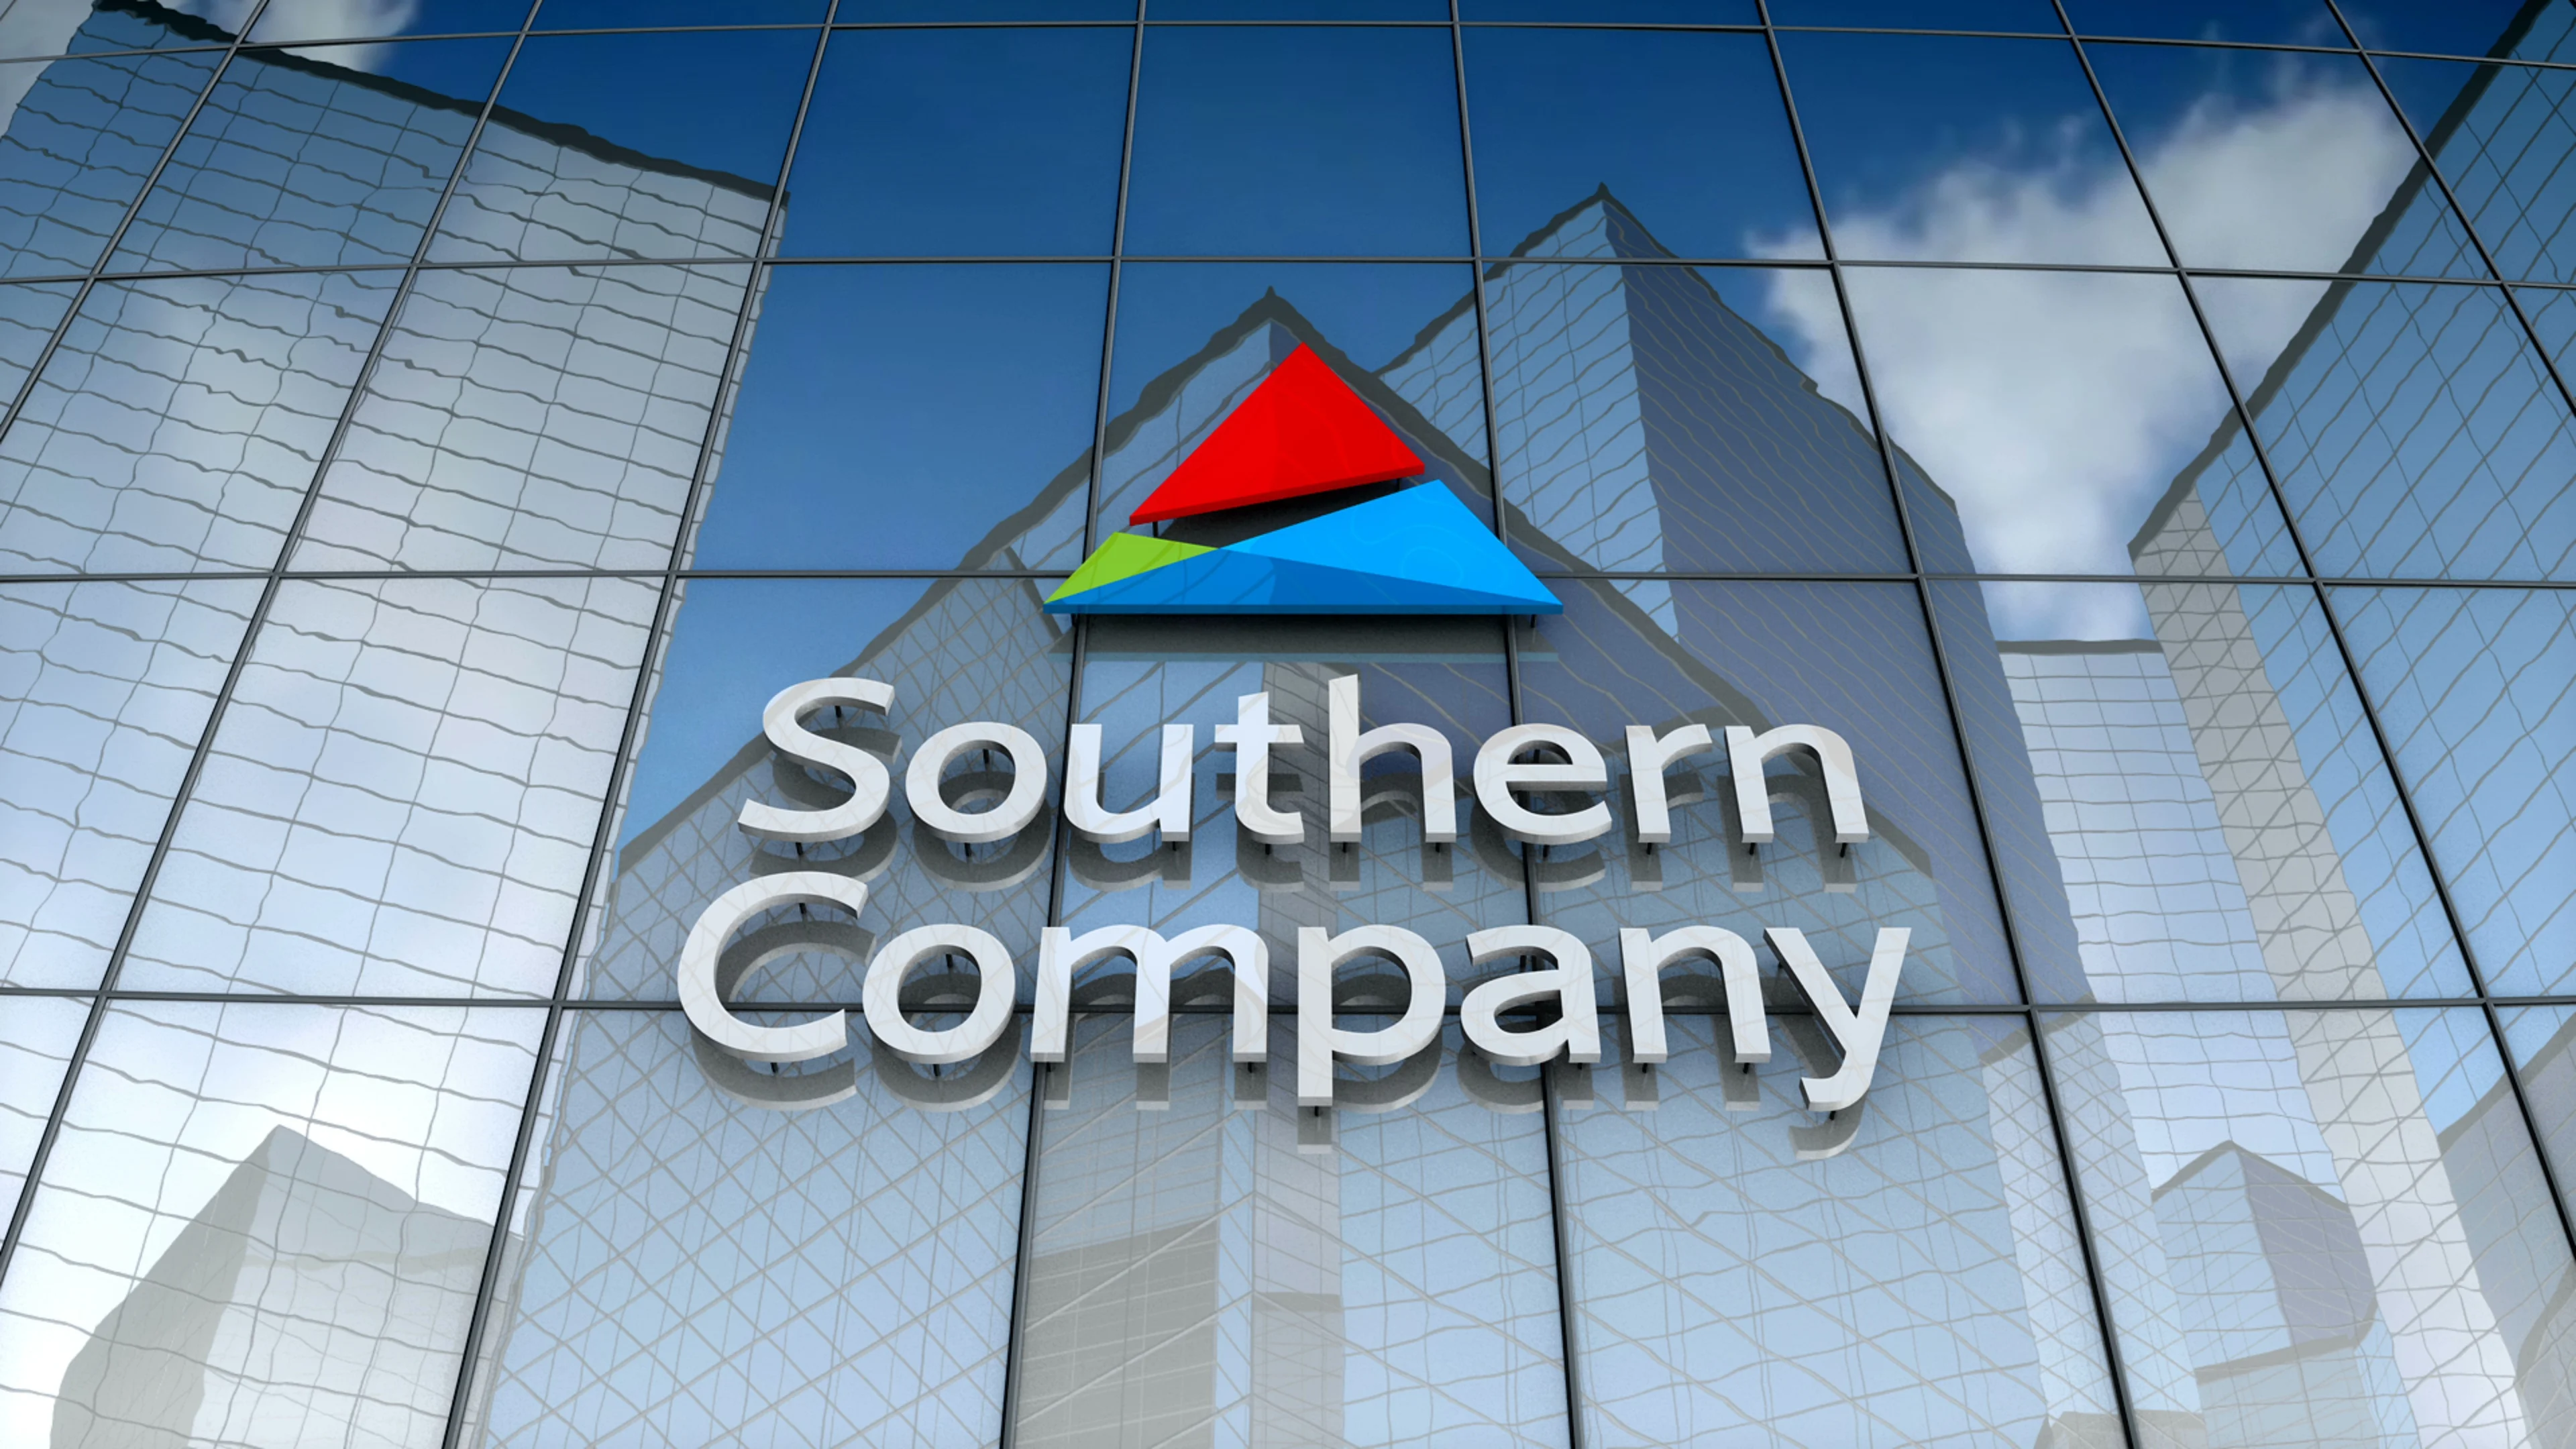 Со company. Southern Company. Southern Company лого. Southern Company акции. Southern Company №2.